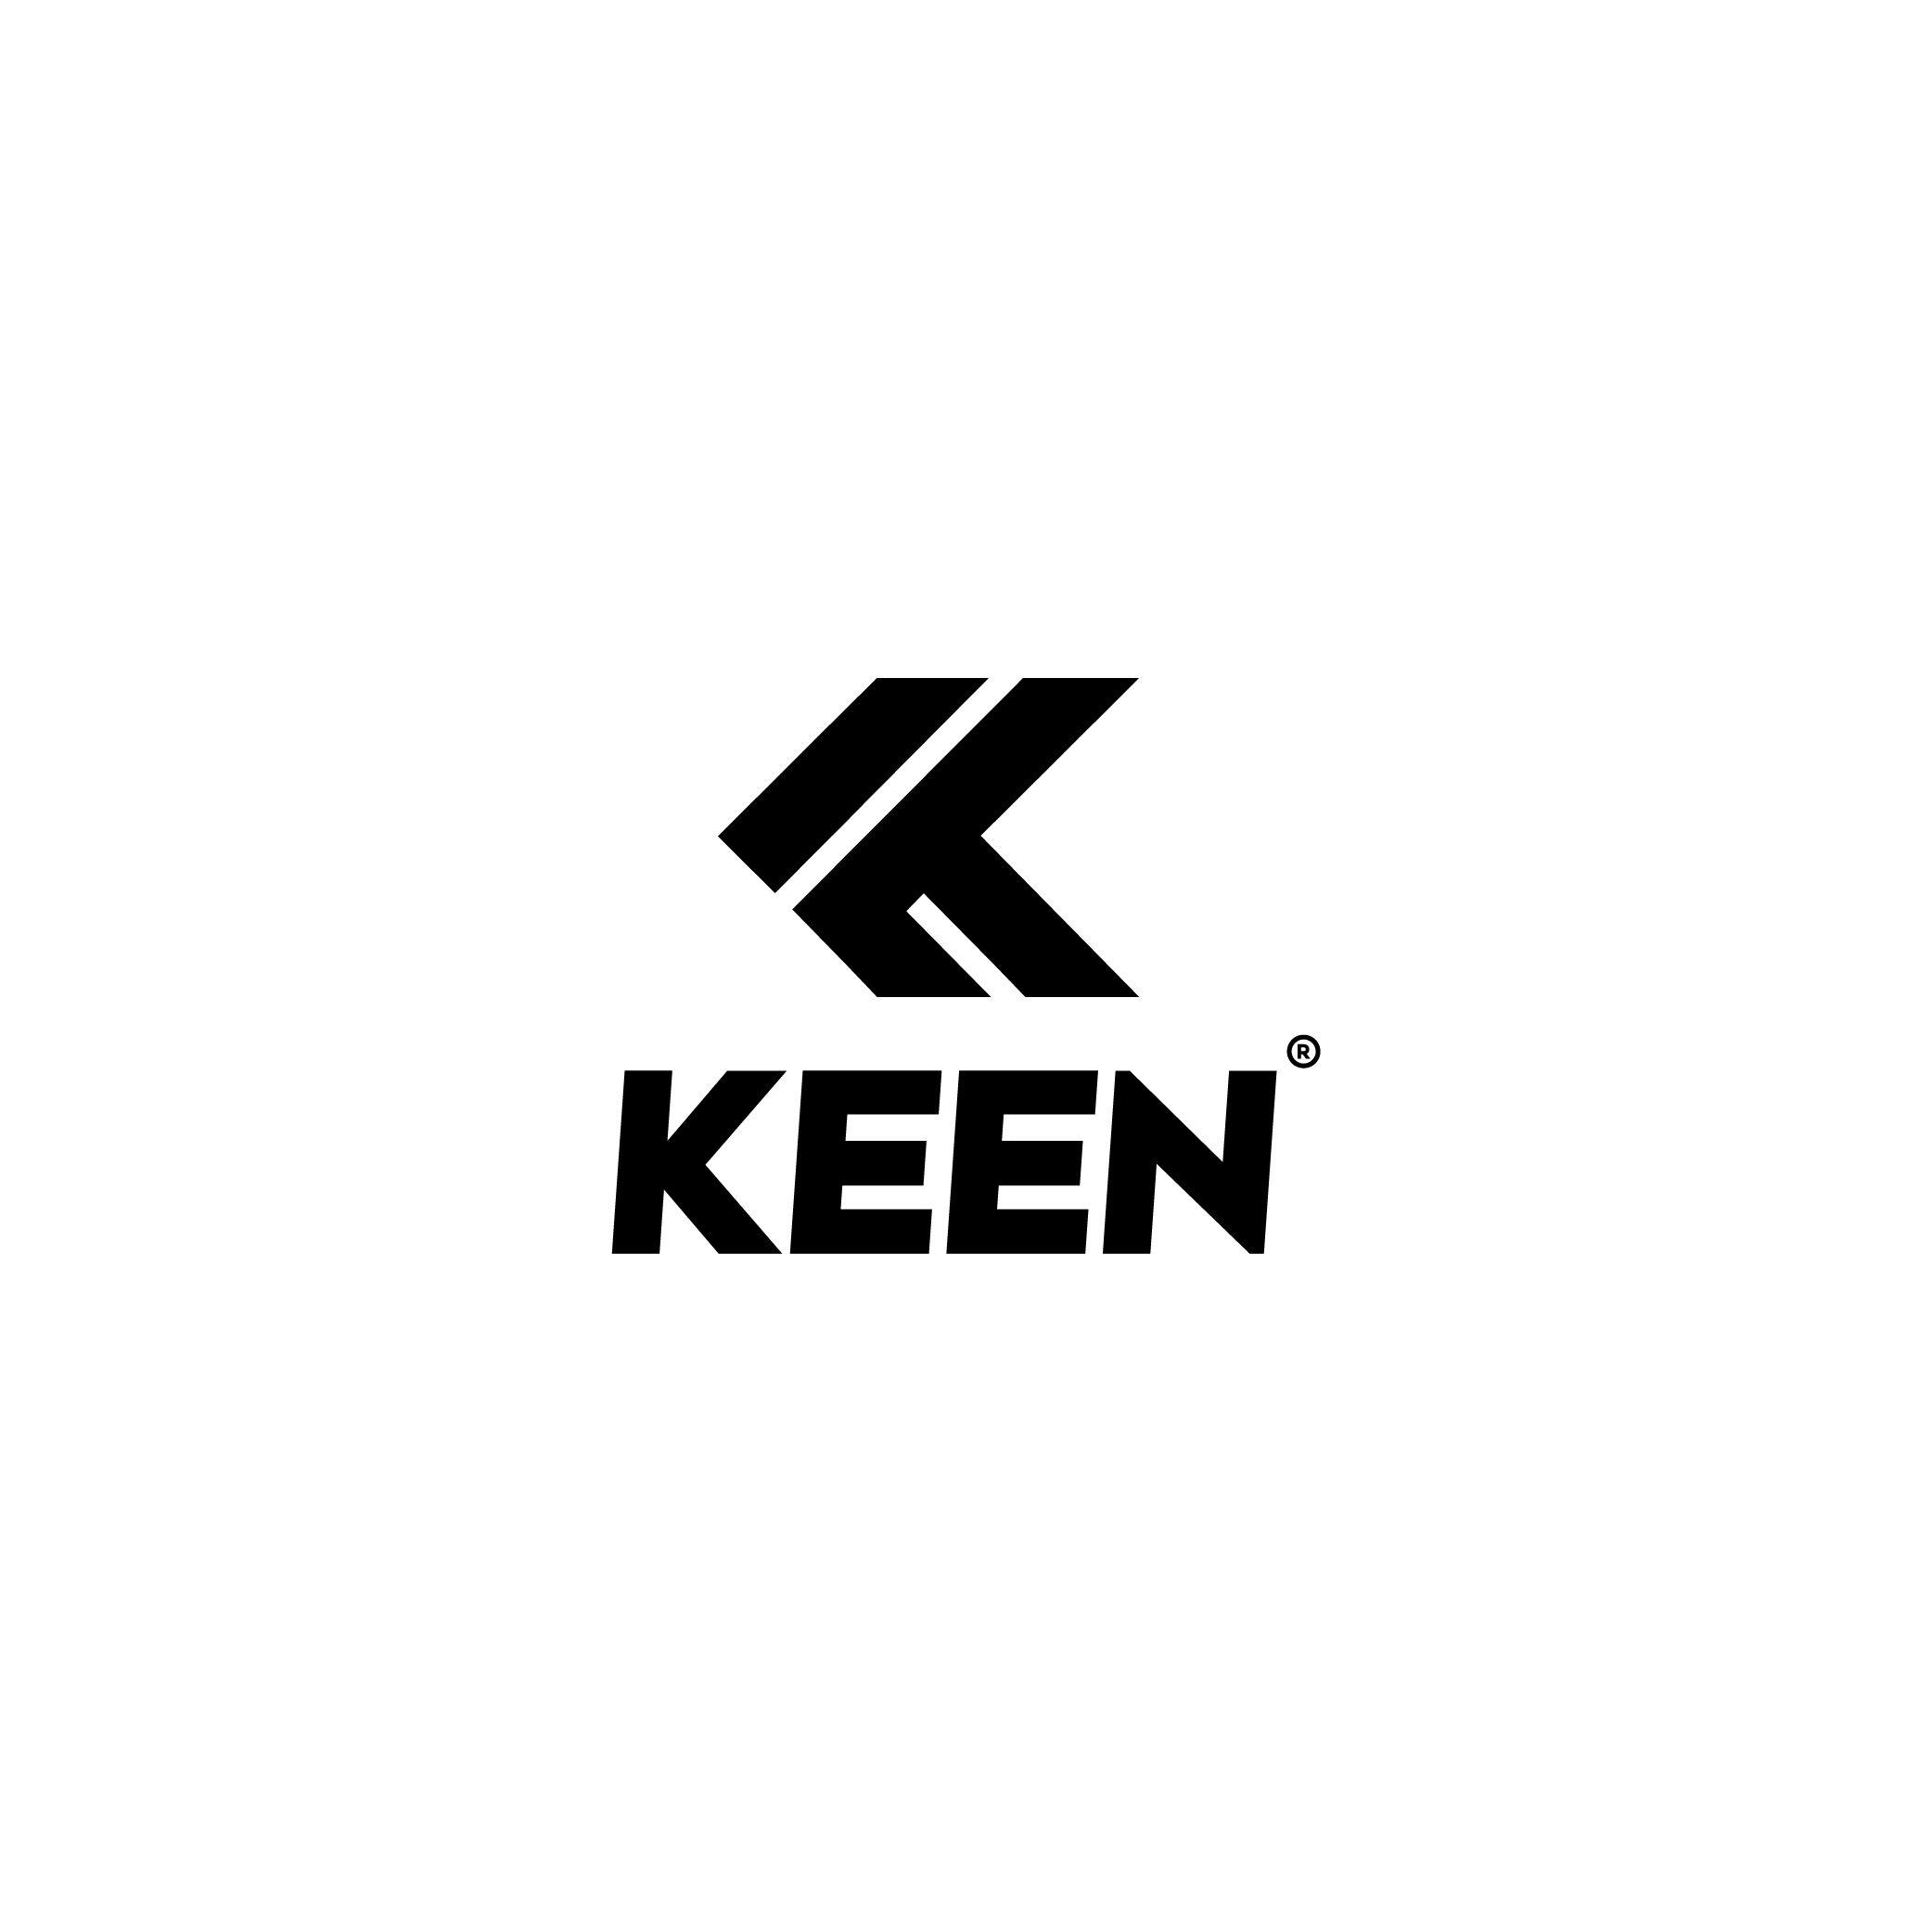 Keen Logo - KEEN LOGO DESIGN CONCEPT 2